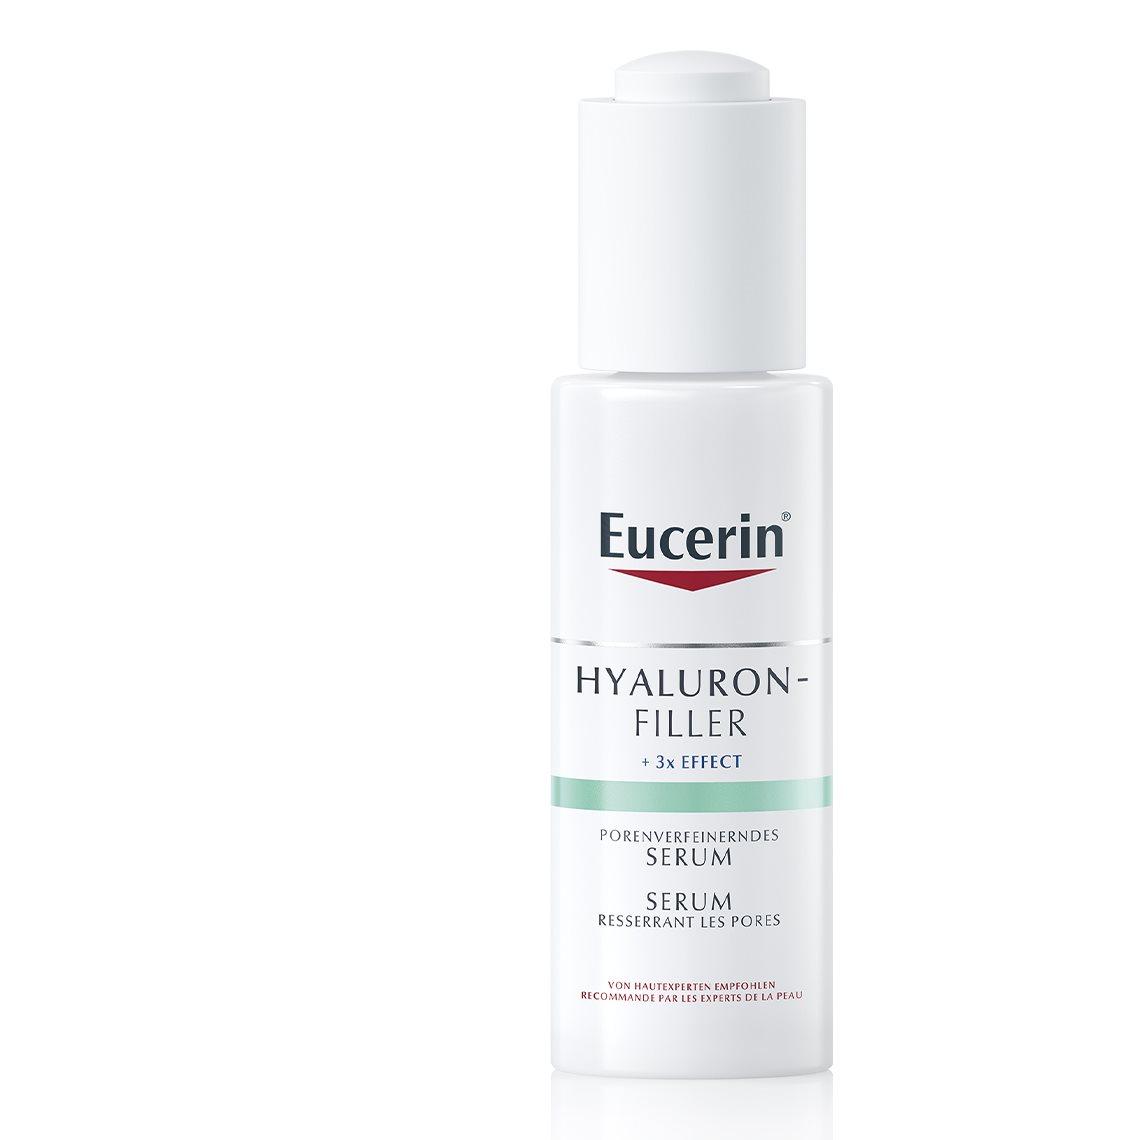 Eucerin HYALURON-FILLER Porenverfeinerndes Serum